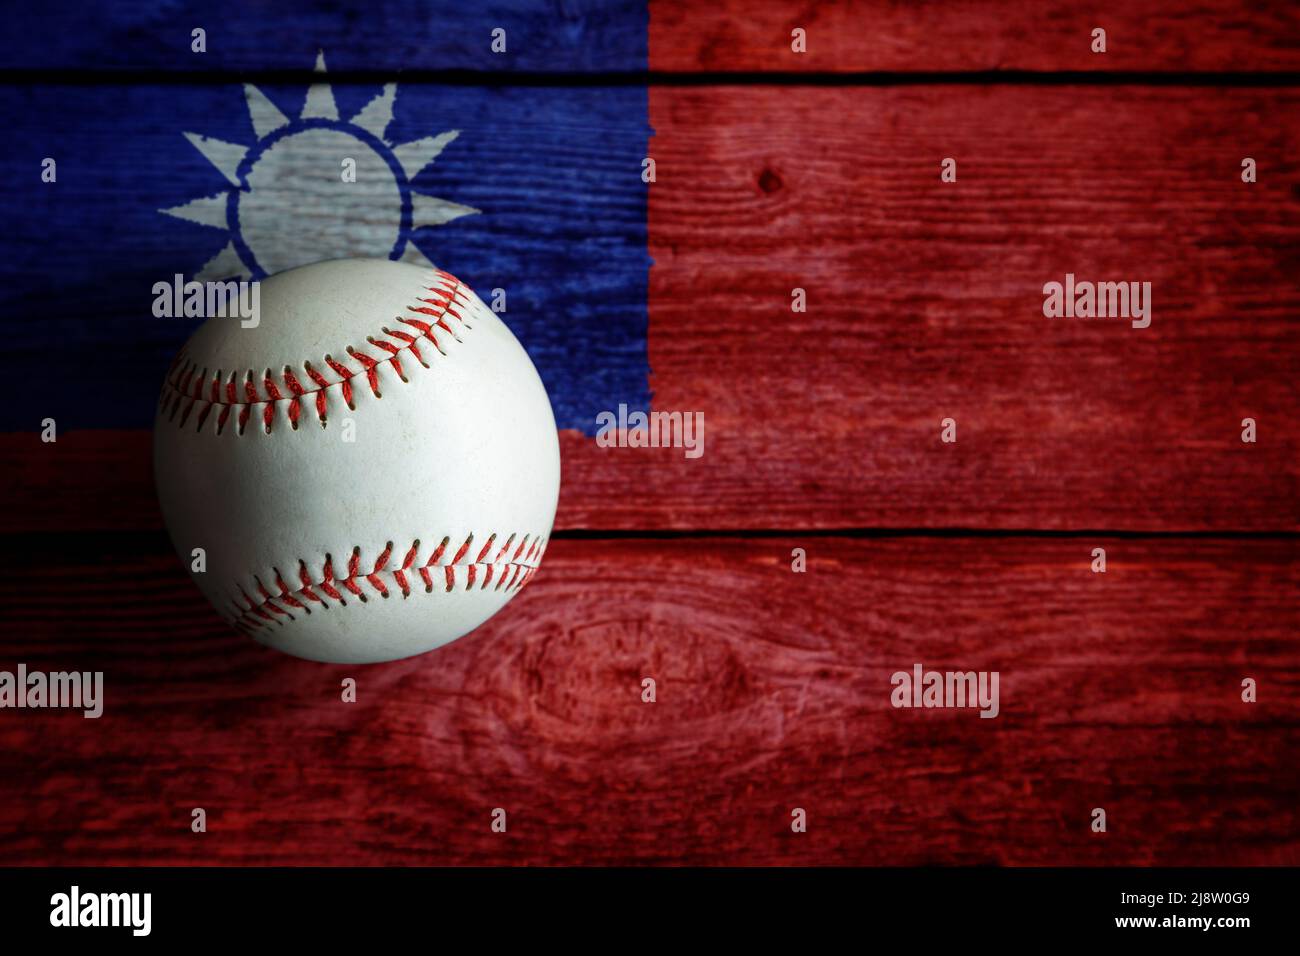 Baseball de cuero sobre fondo rústico de madera pintado con bandera taiwanesa con espacio de copia. Taiwán o Taipei Chino es una de las principales naciones de béisbol Foto de stock